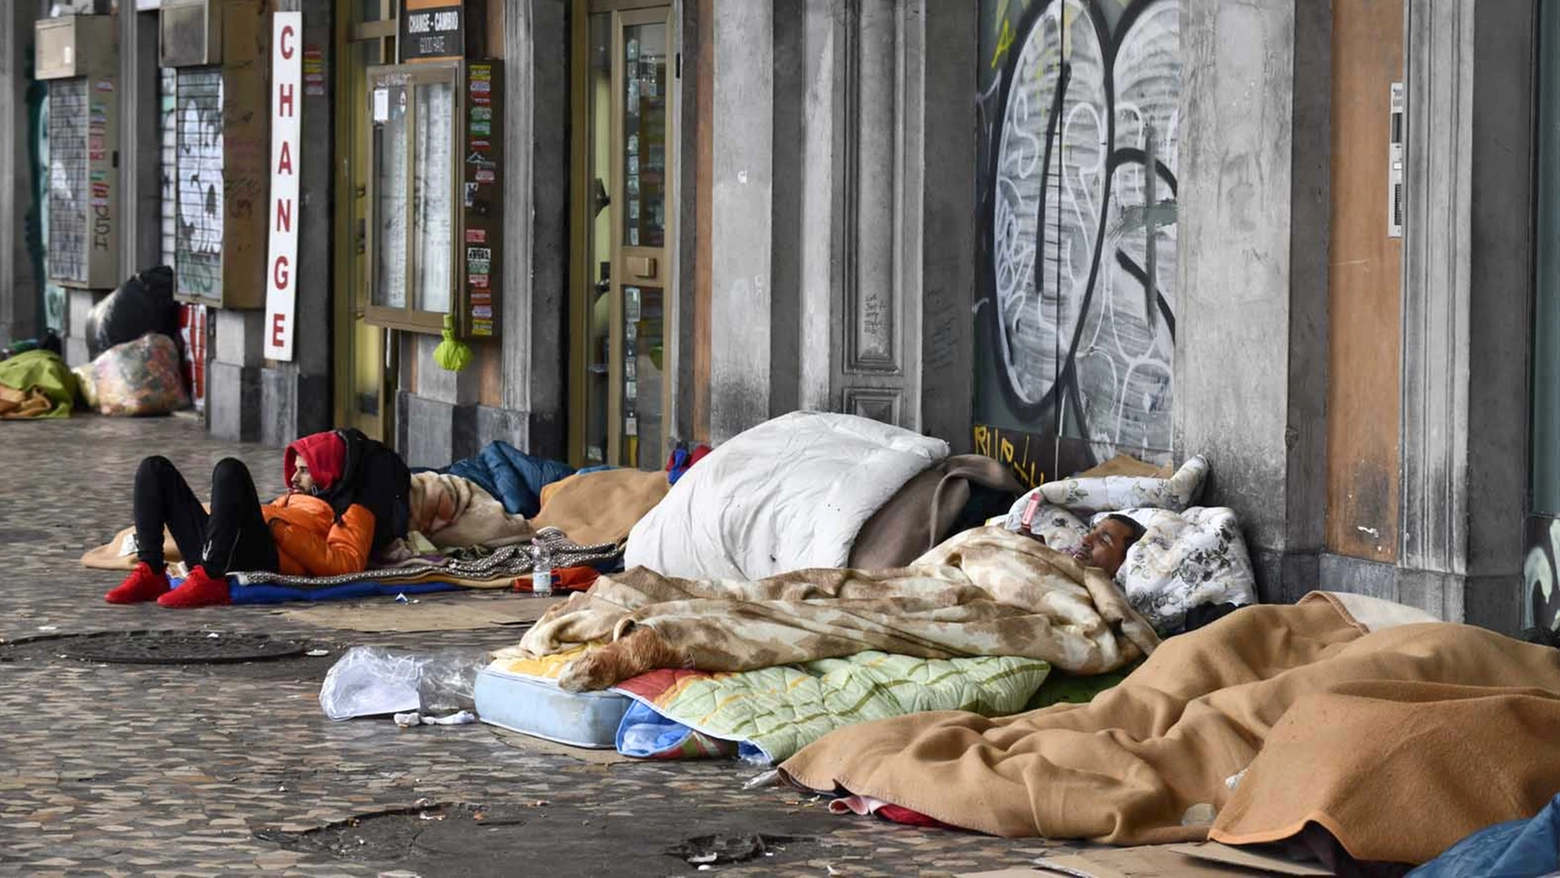 L'aumento dei senza tetto è legato anche al prezzo degli alloggi (foto d'archivio)